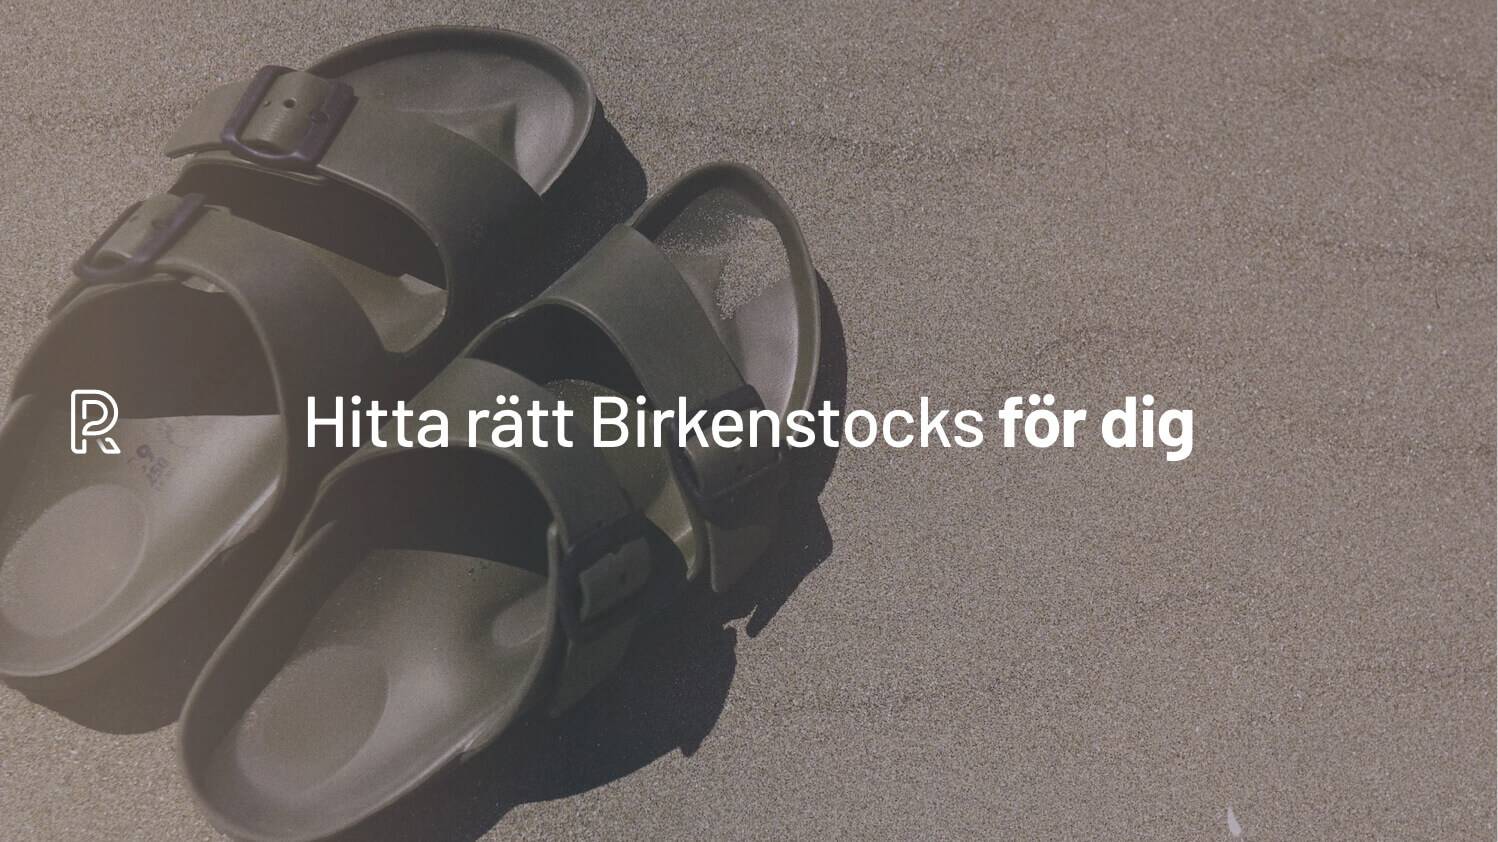 GUIDE: Allt om Birkenstock (modeller, fotbäddar och storlekar)